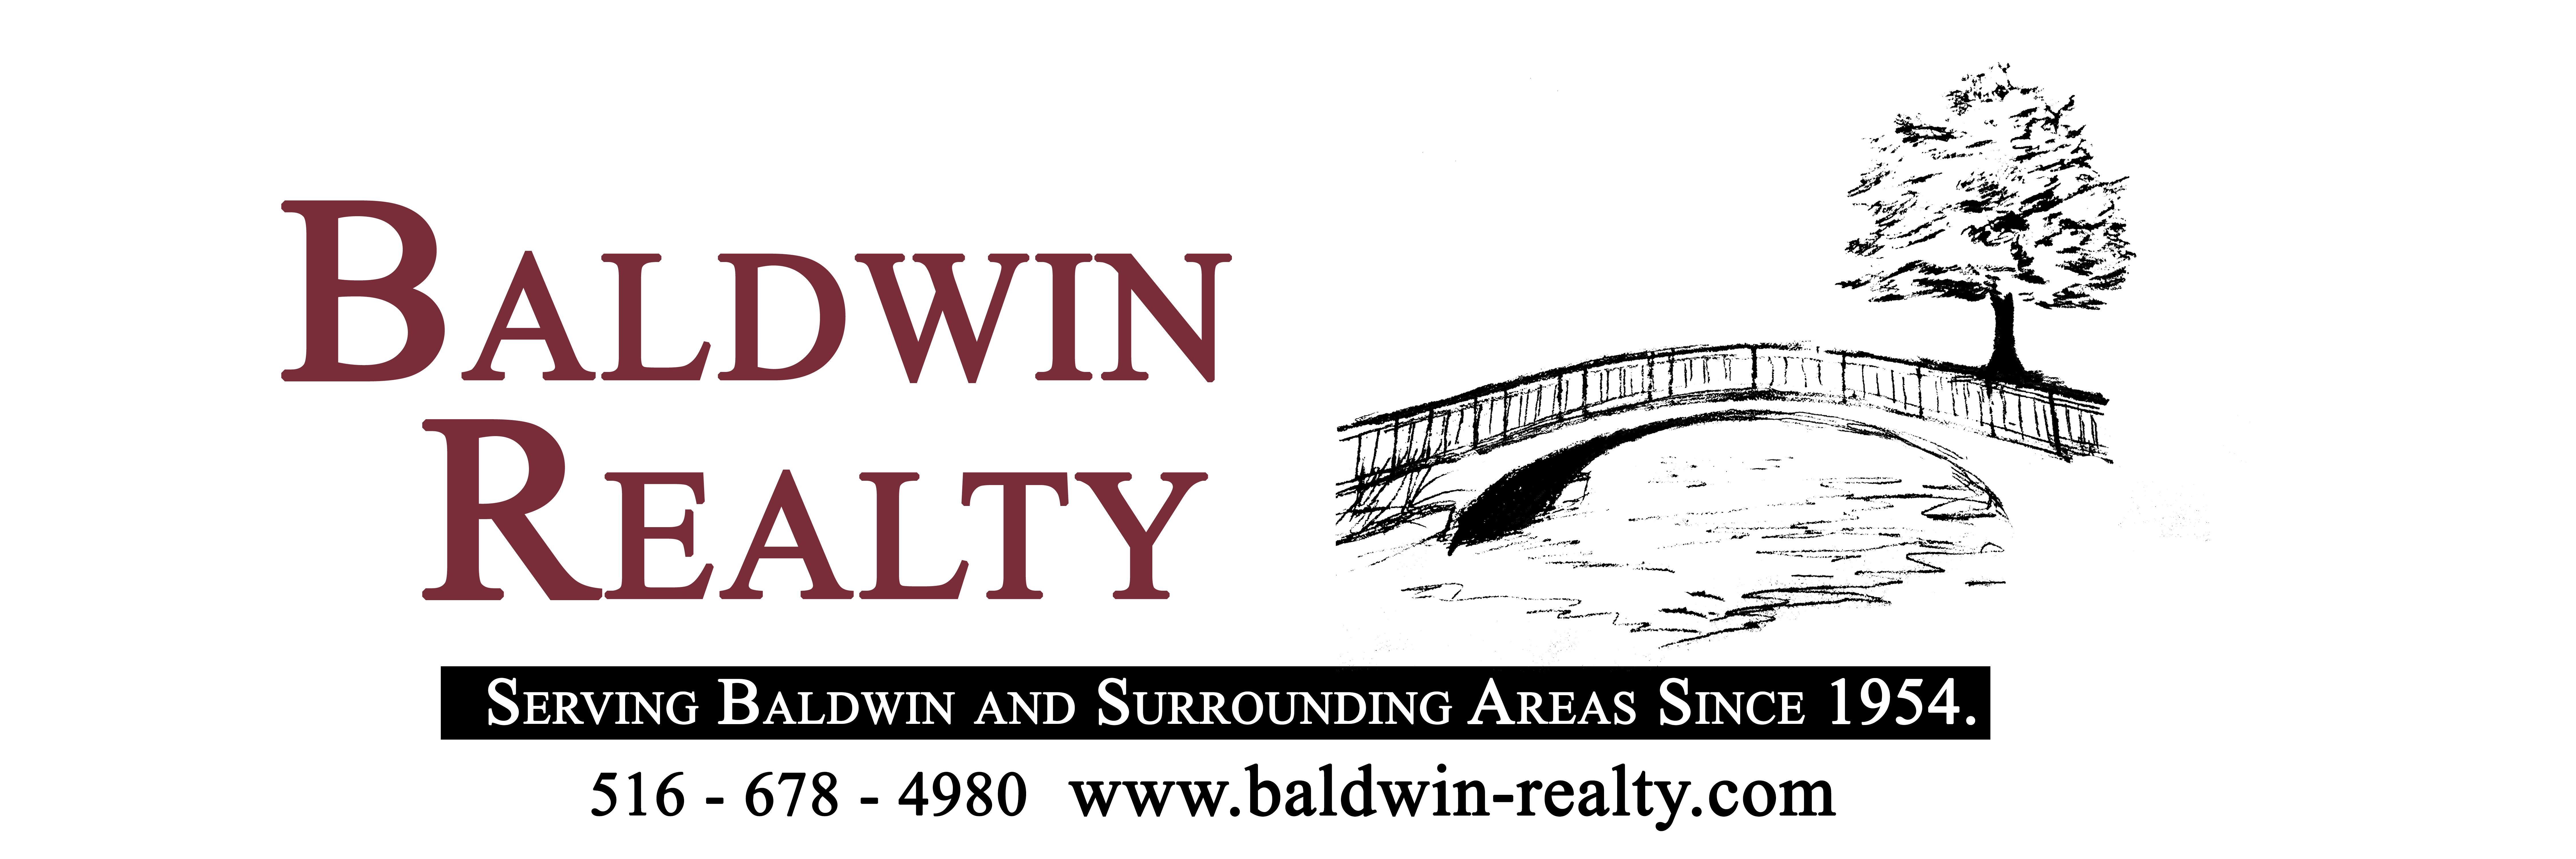 Baldwin Realty